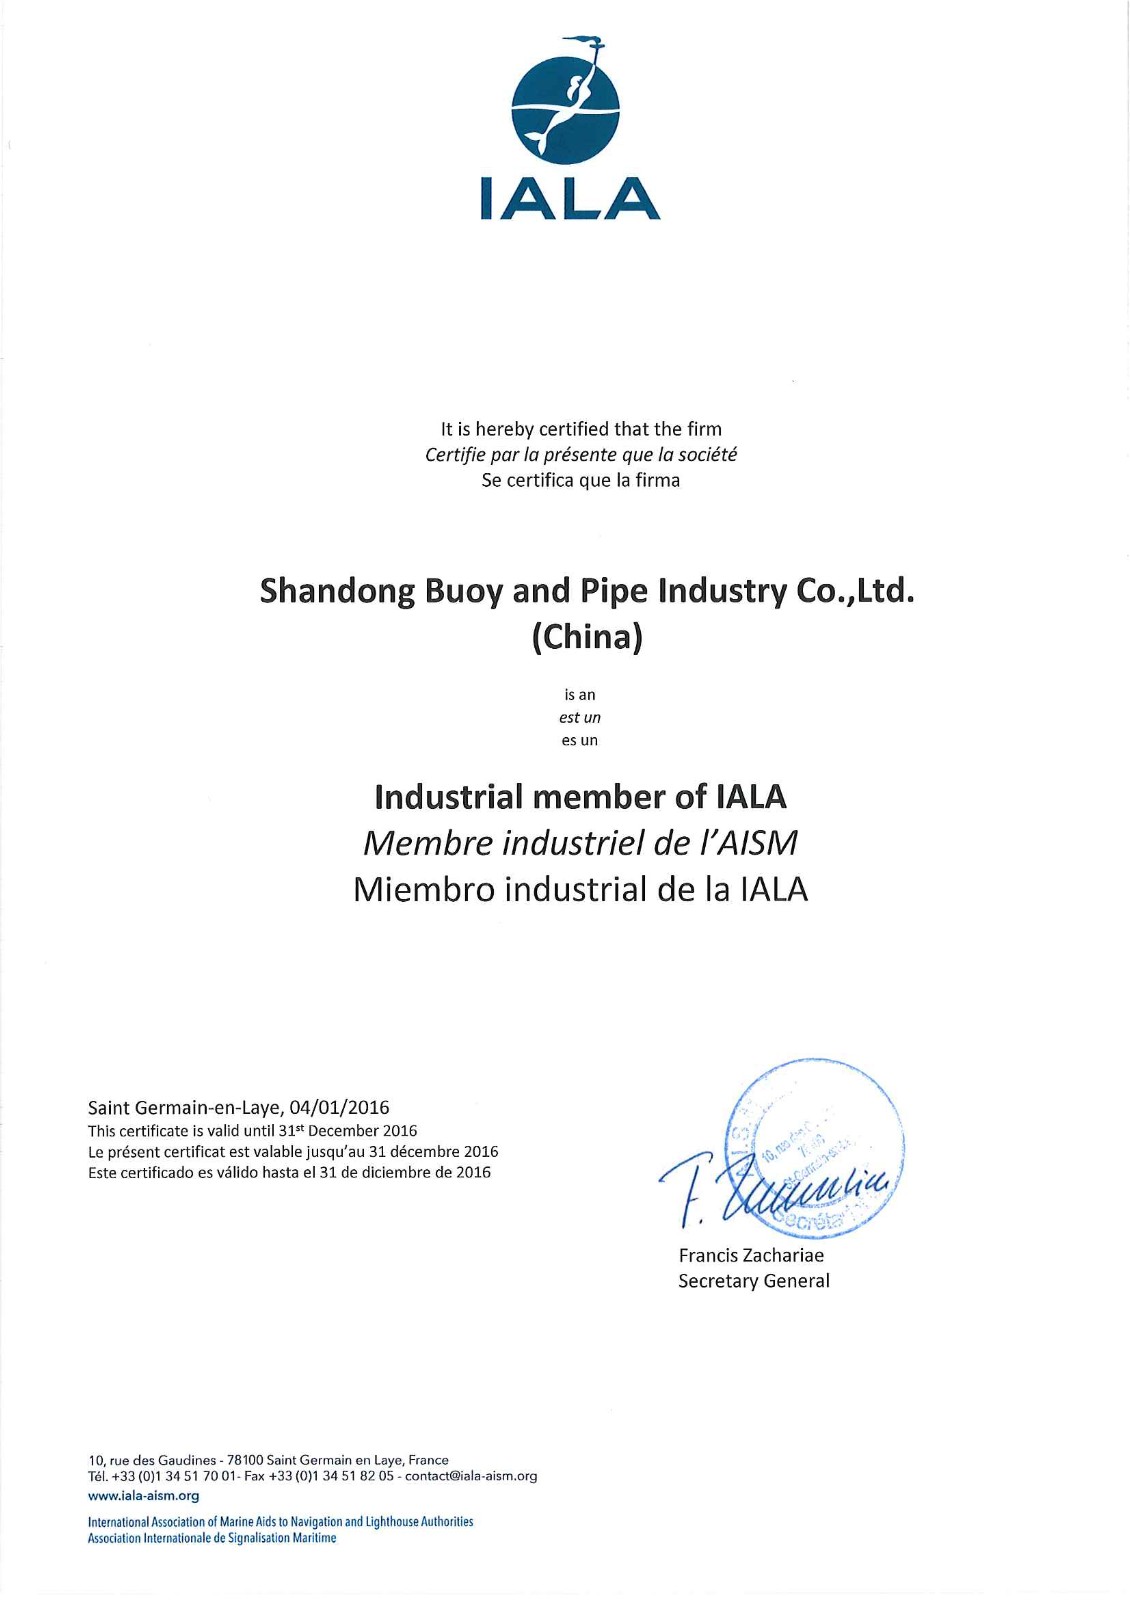 IALA certificate 2016.jpg